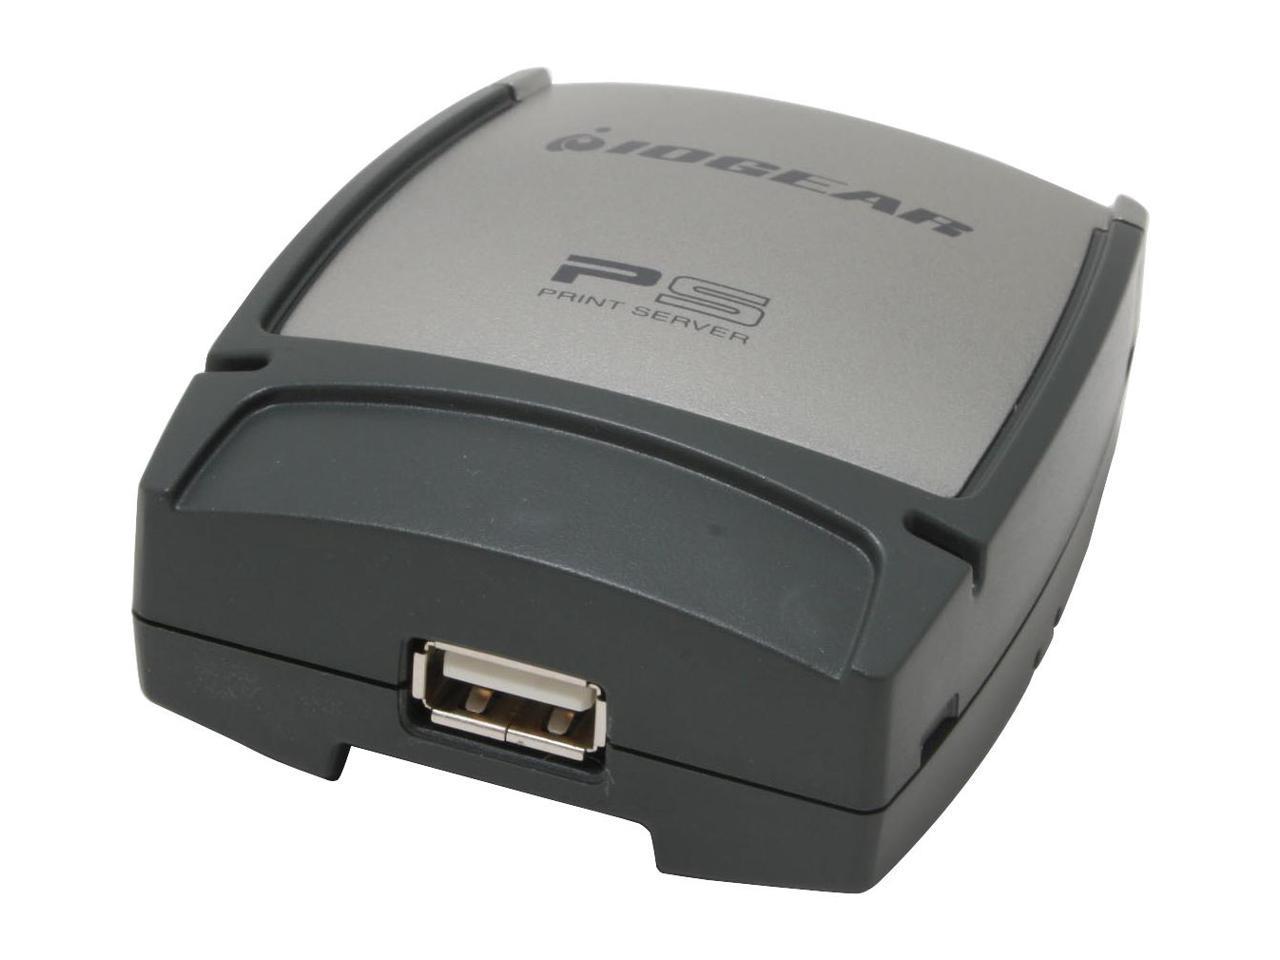 Принтер сервер купить. Принт сервер для USB принтера. Печать через rj45 на USB принтер. Принт сервер com порт. Принтер сервер 10 USB Port.